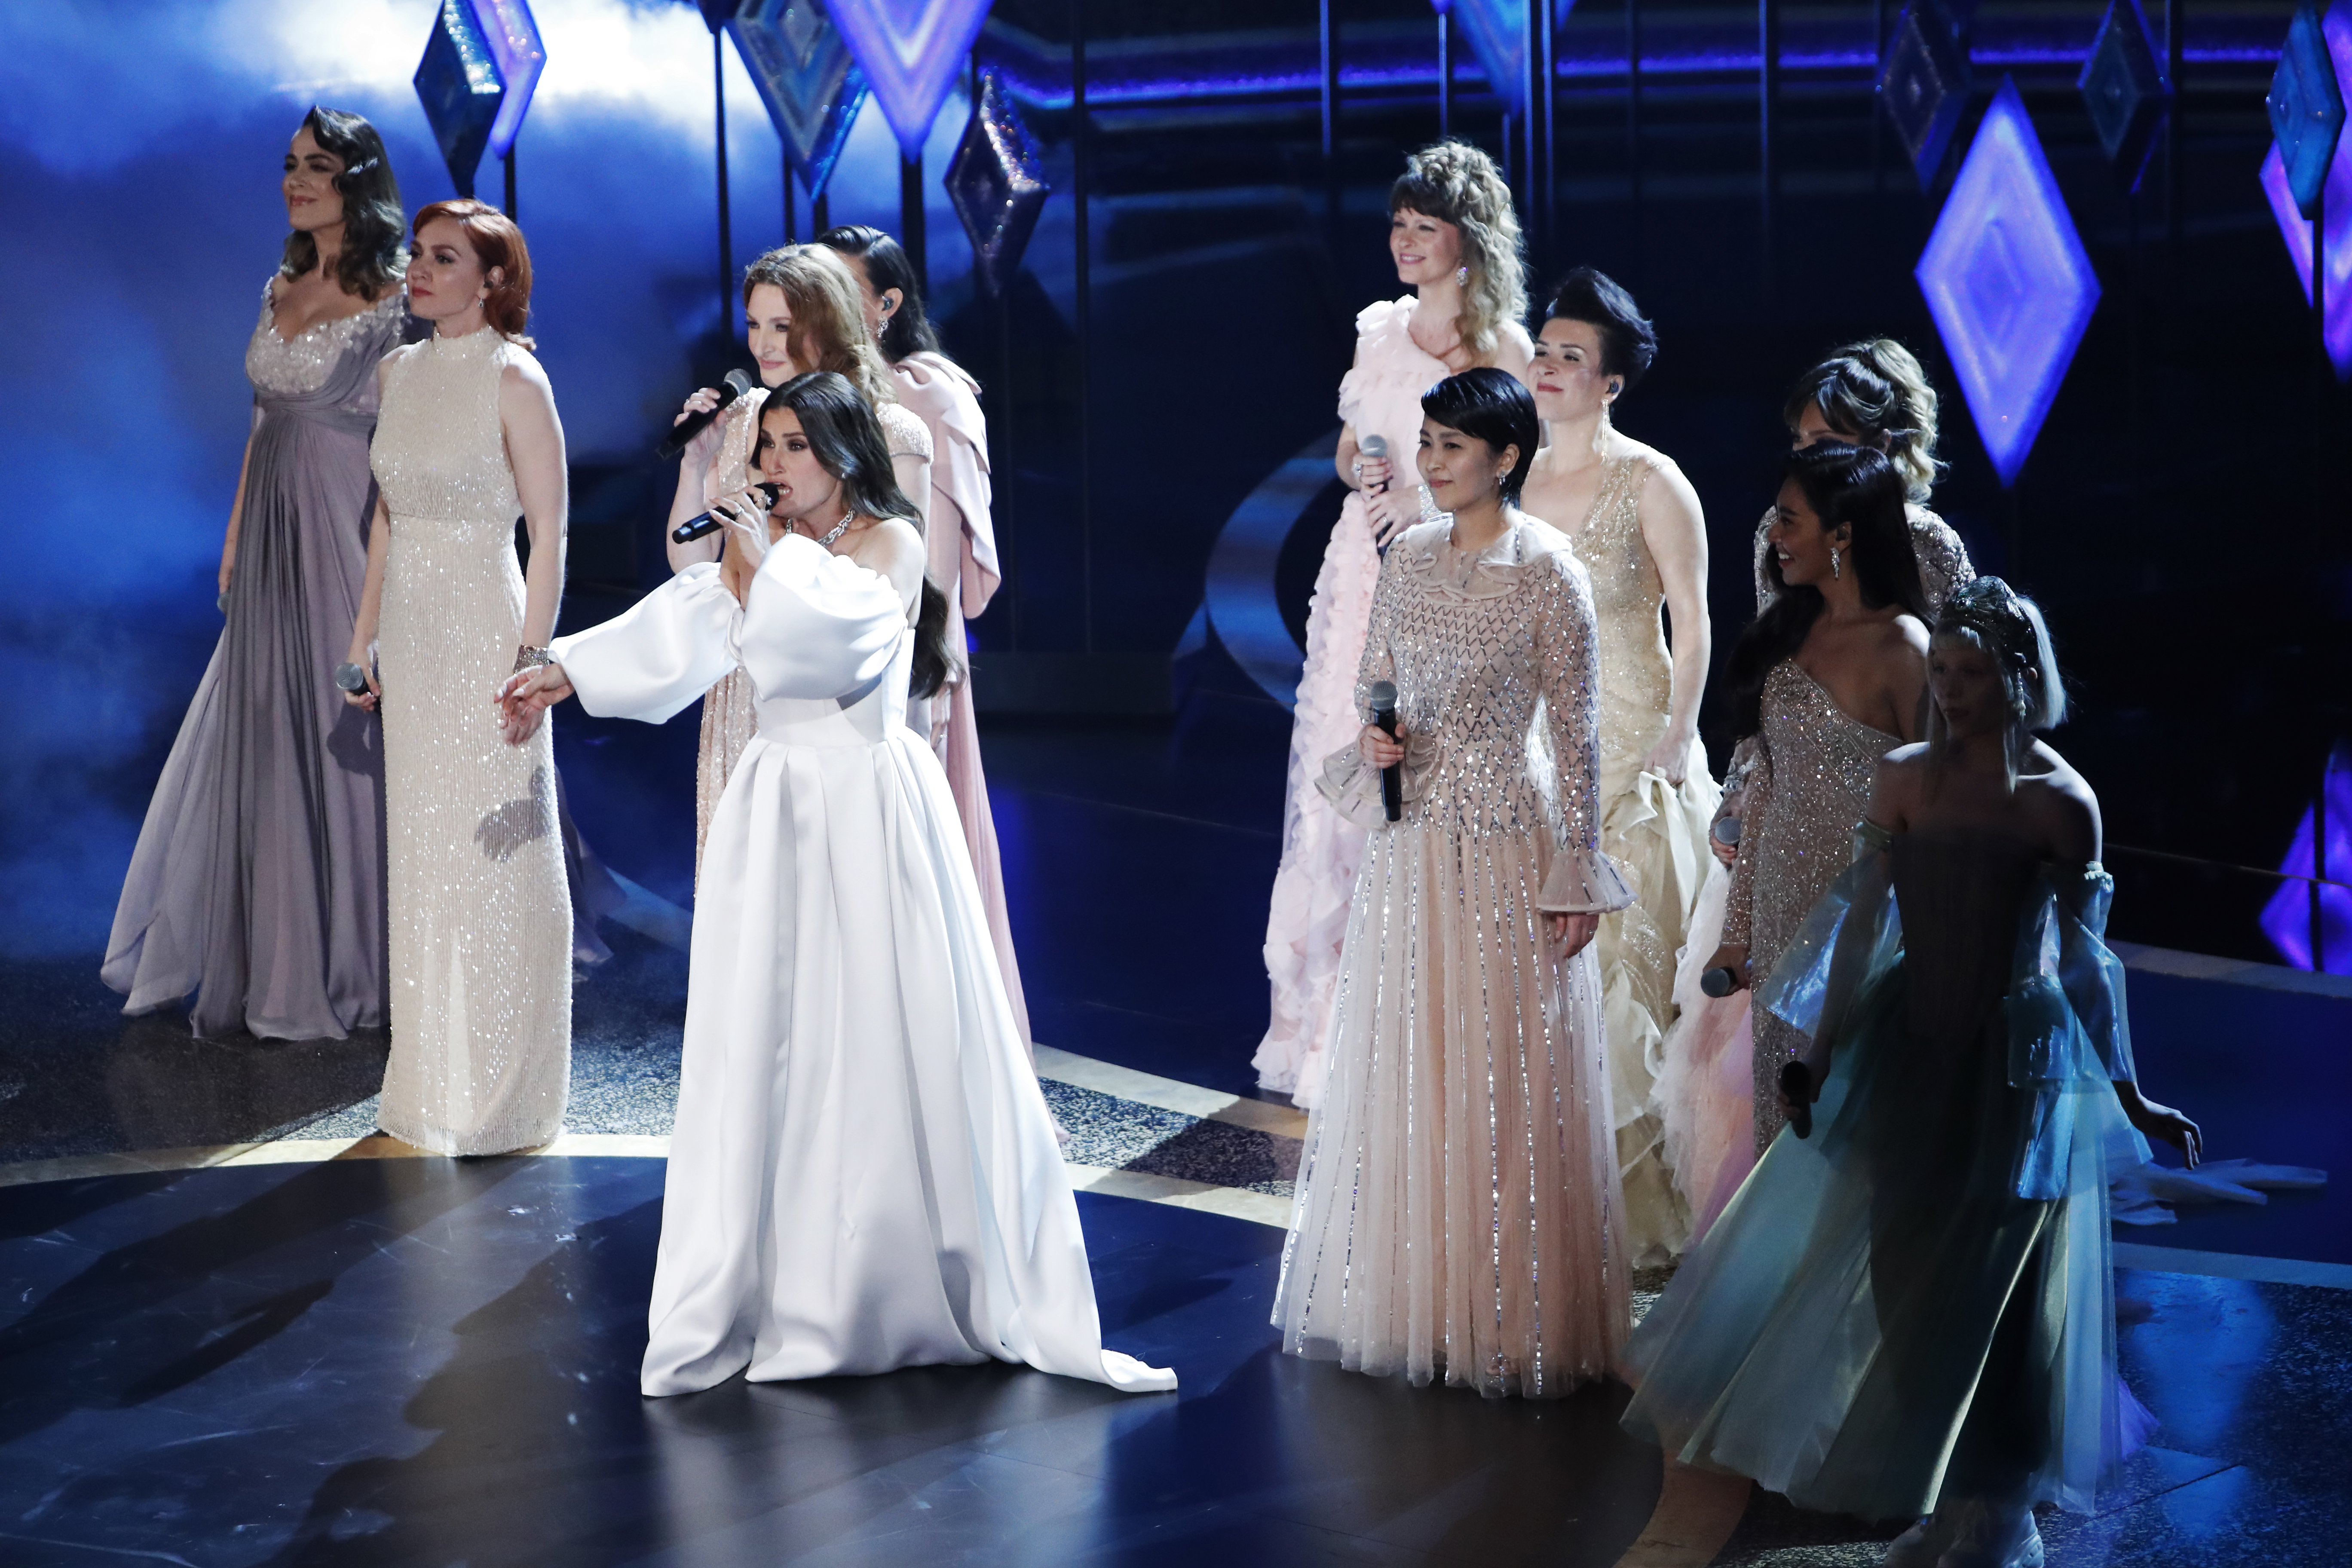 Tras el éxito que alcanzó "Let it go", Dina Menzel e intérpretes de la canción en distintos idiomas protagonizaron un performance en la entrega 92 de los Premios Oscar. (Mario Anzuoni/Reuters)